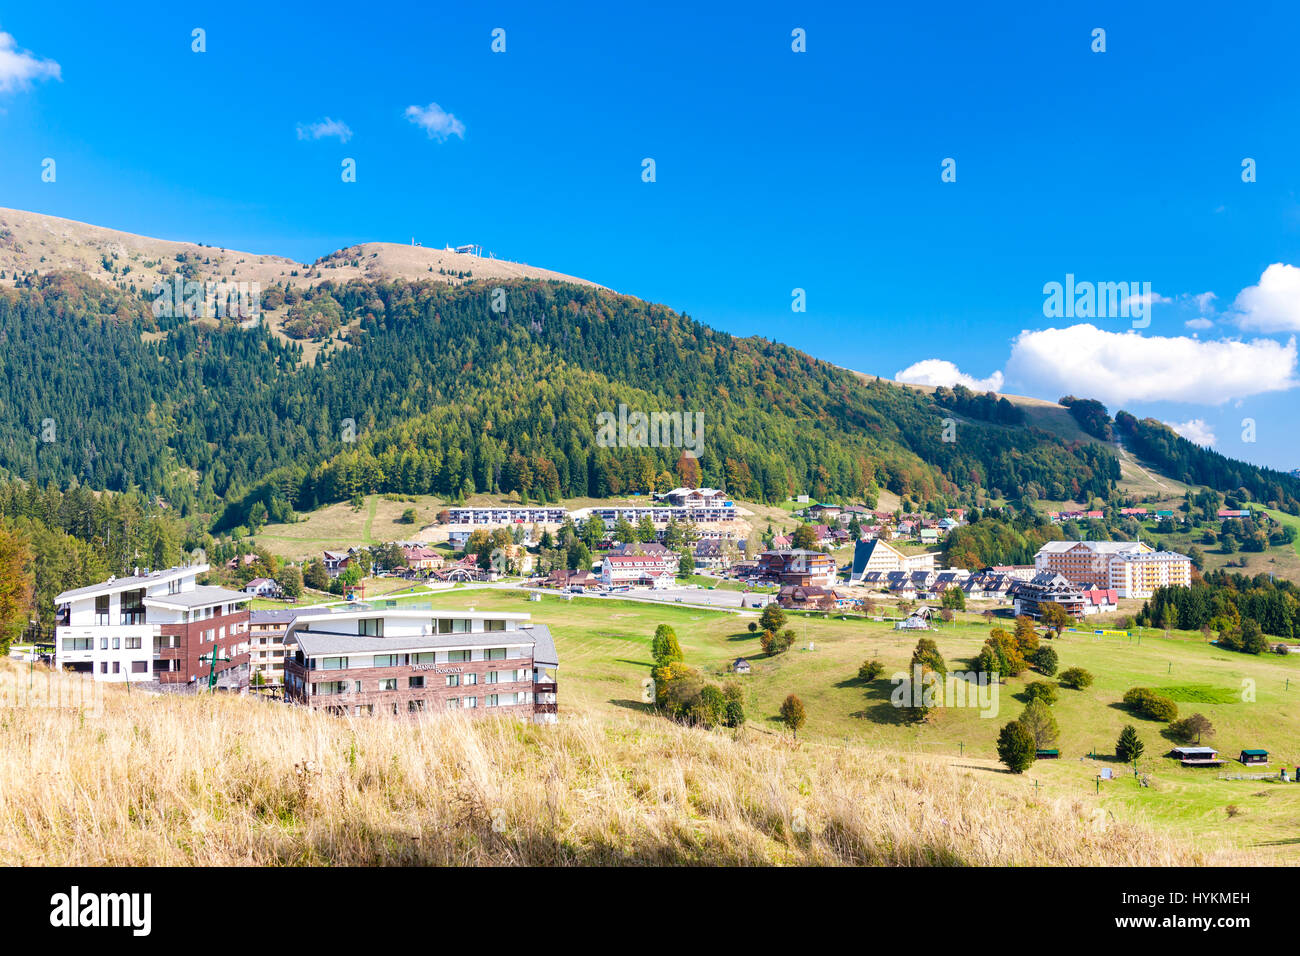 Donovaly, Nizke Tatry (Low Tatras), Slovakia Stock Photo - Alamy